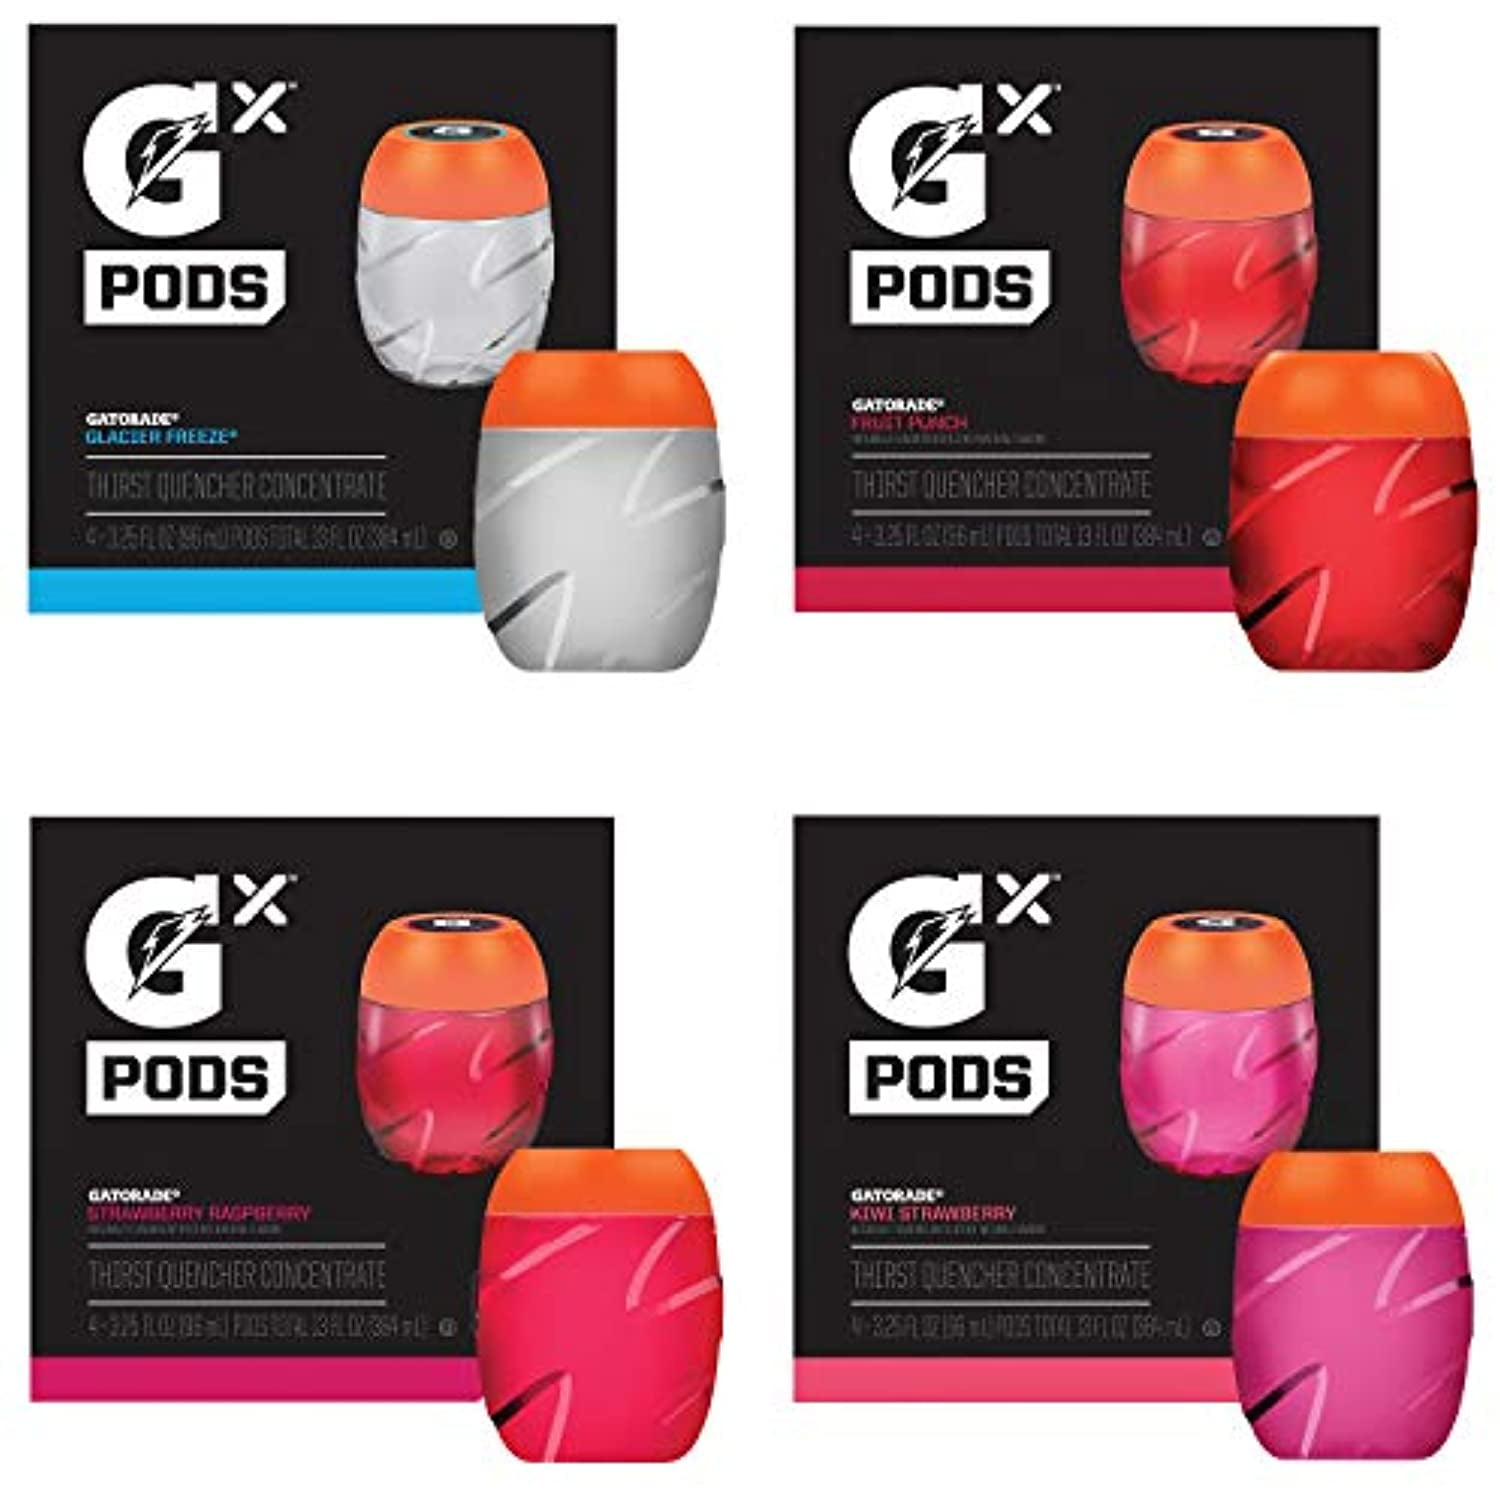 Gatorade Fruit Punch Thirst Quencher Gx Pods (3.25 oz)